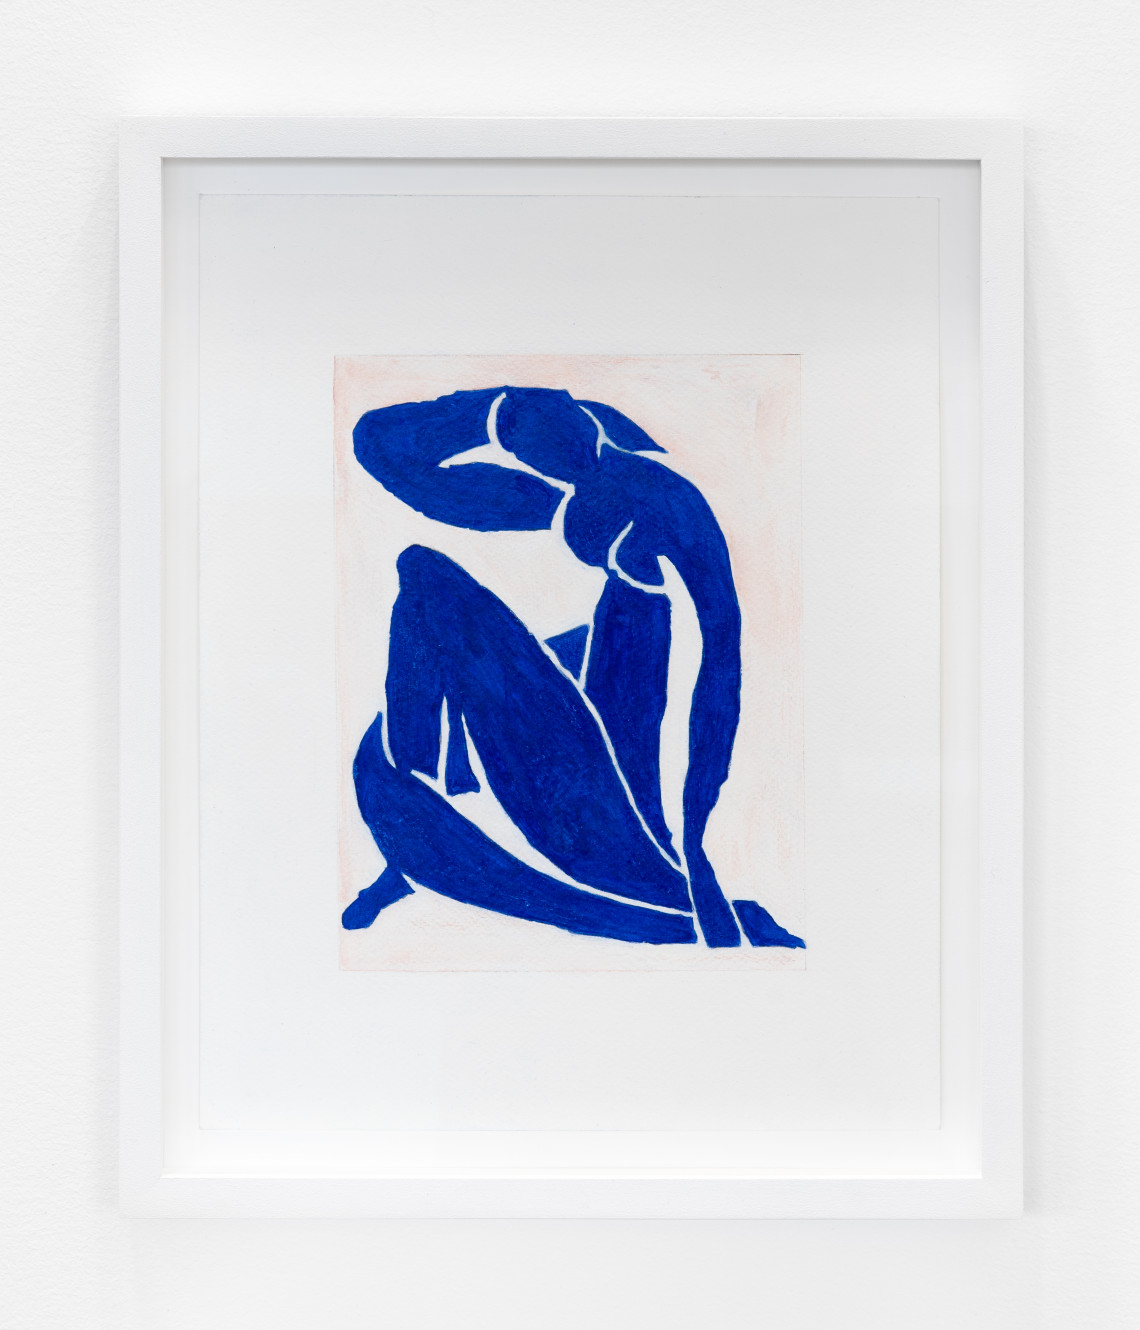  - After Sherrie Levine After Henri Matisse 1983